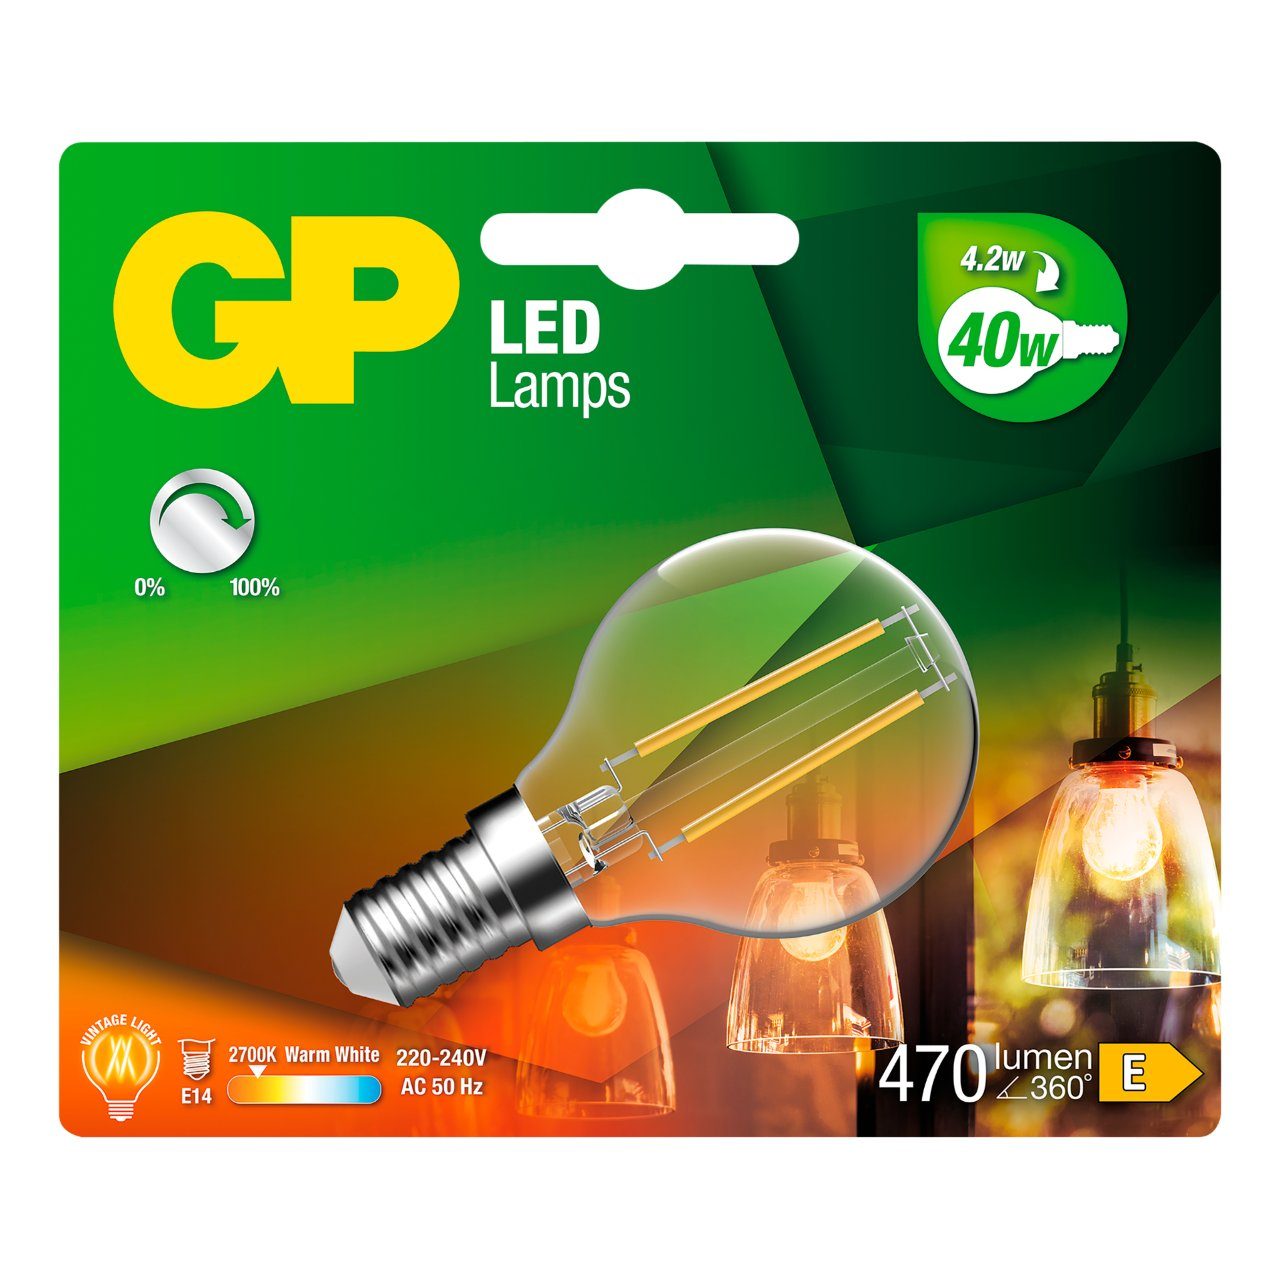 Led lamp GP 078180 E14 globe